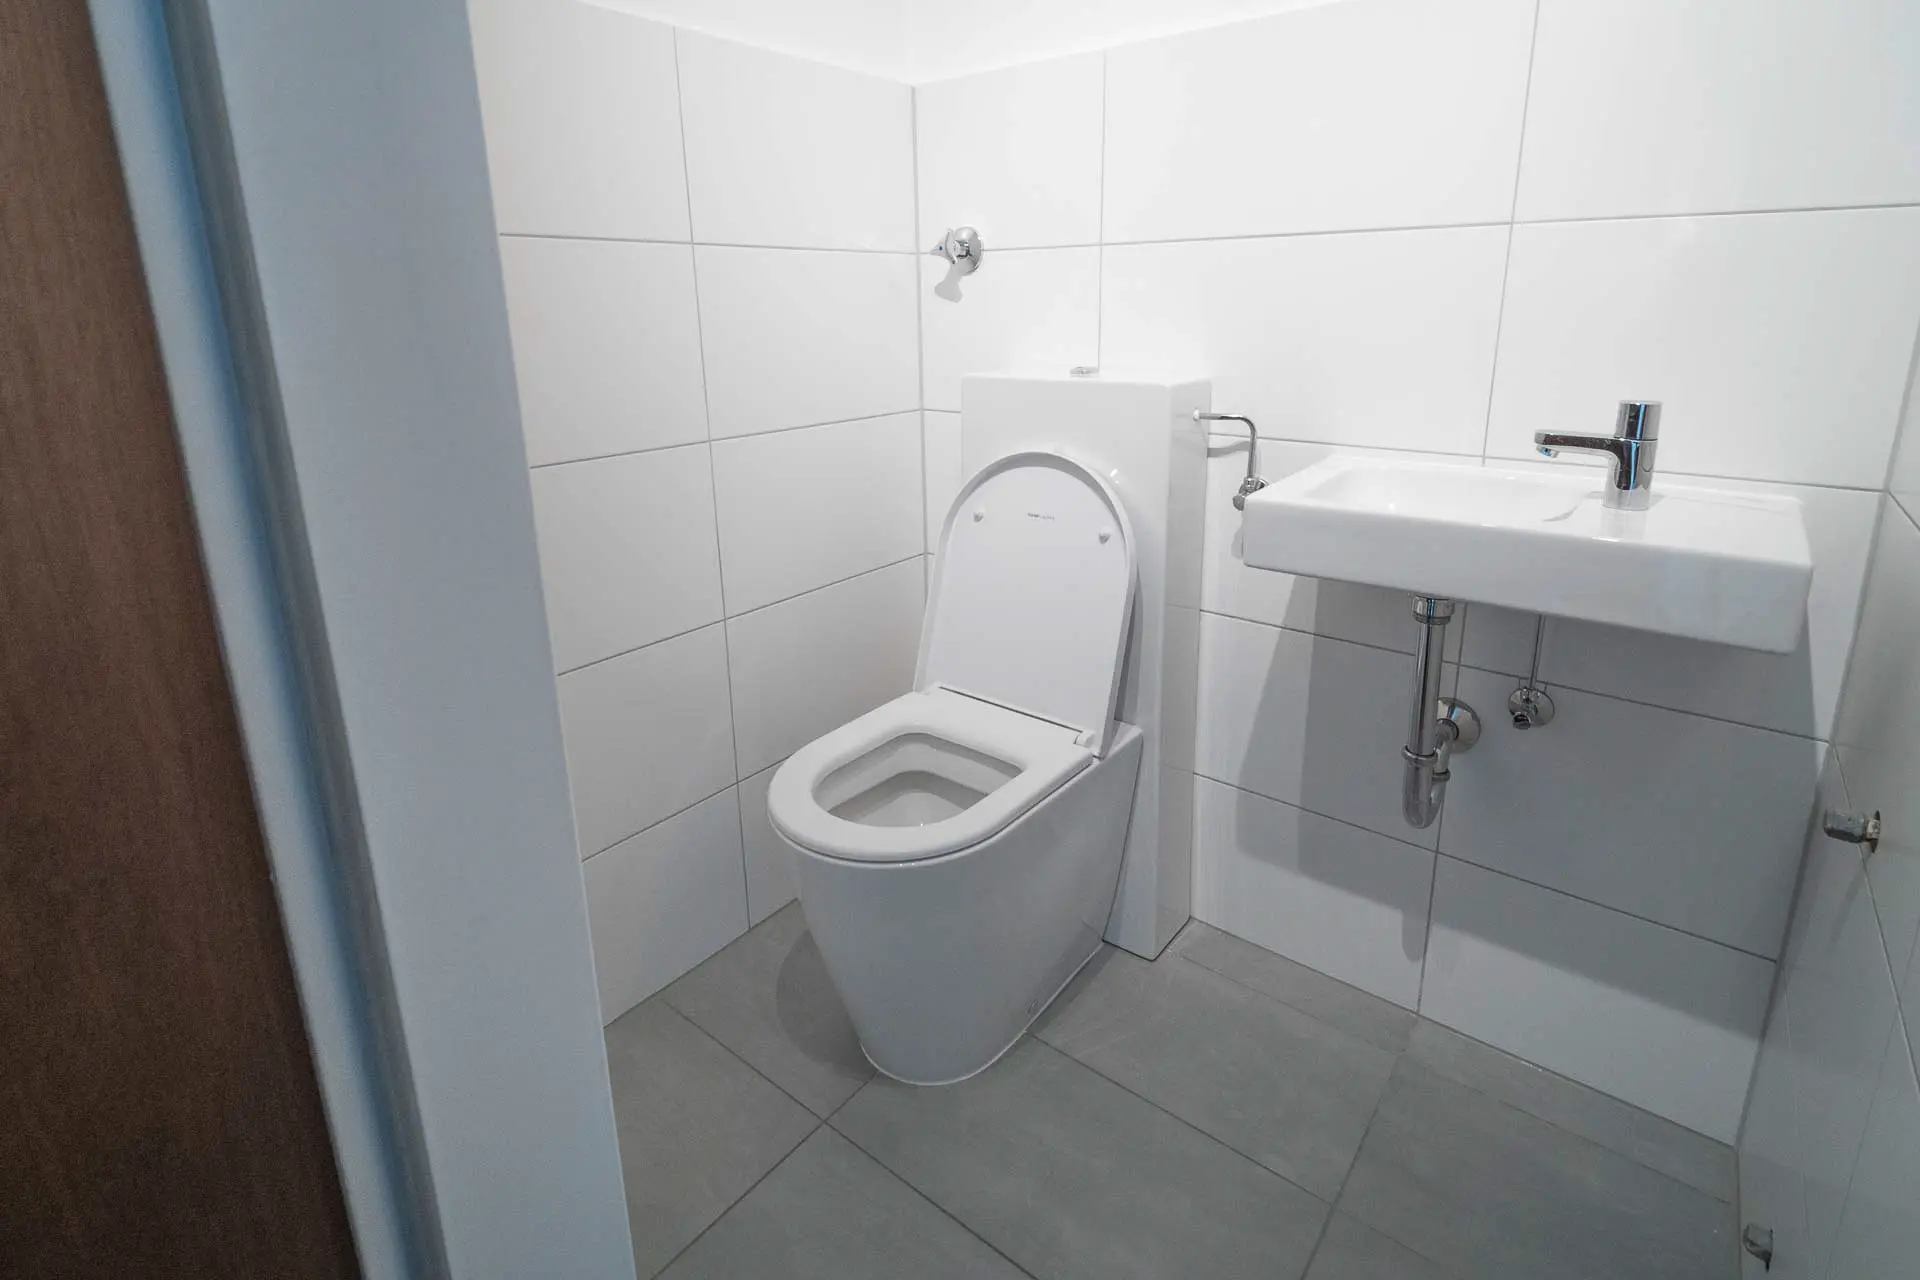 Standspül-WC der Firma Laufen in Kooperation mit dem Designhaus Kartell